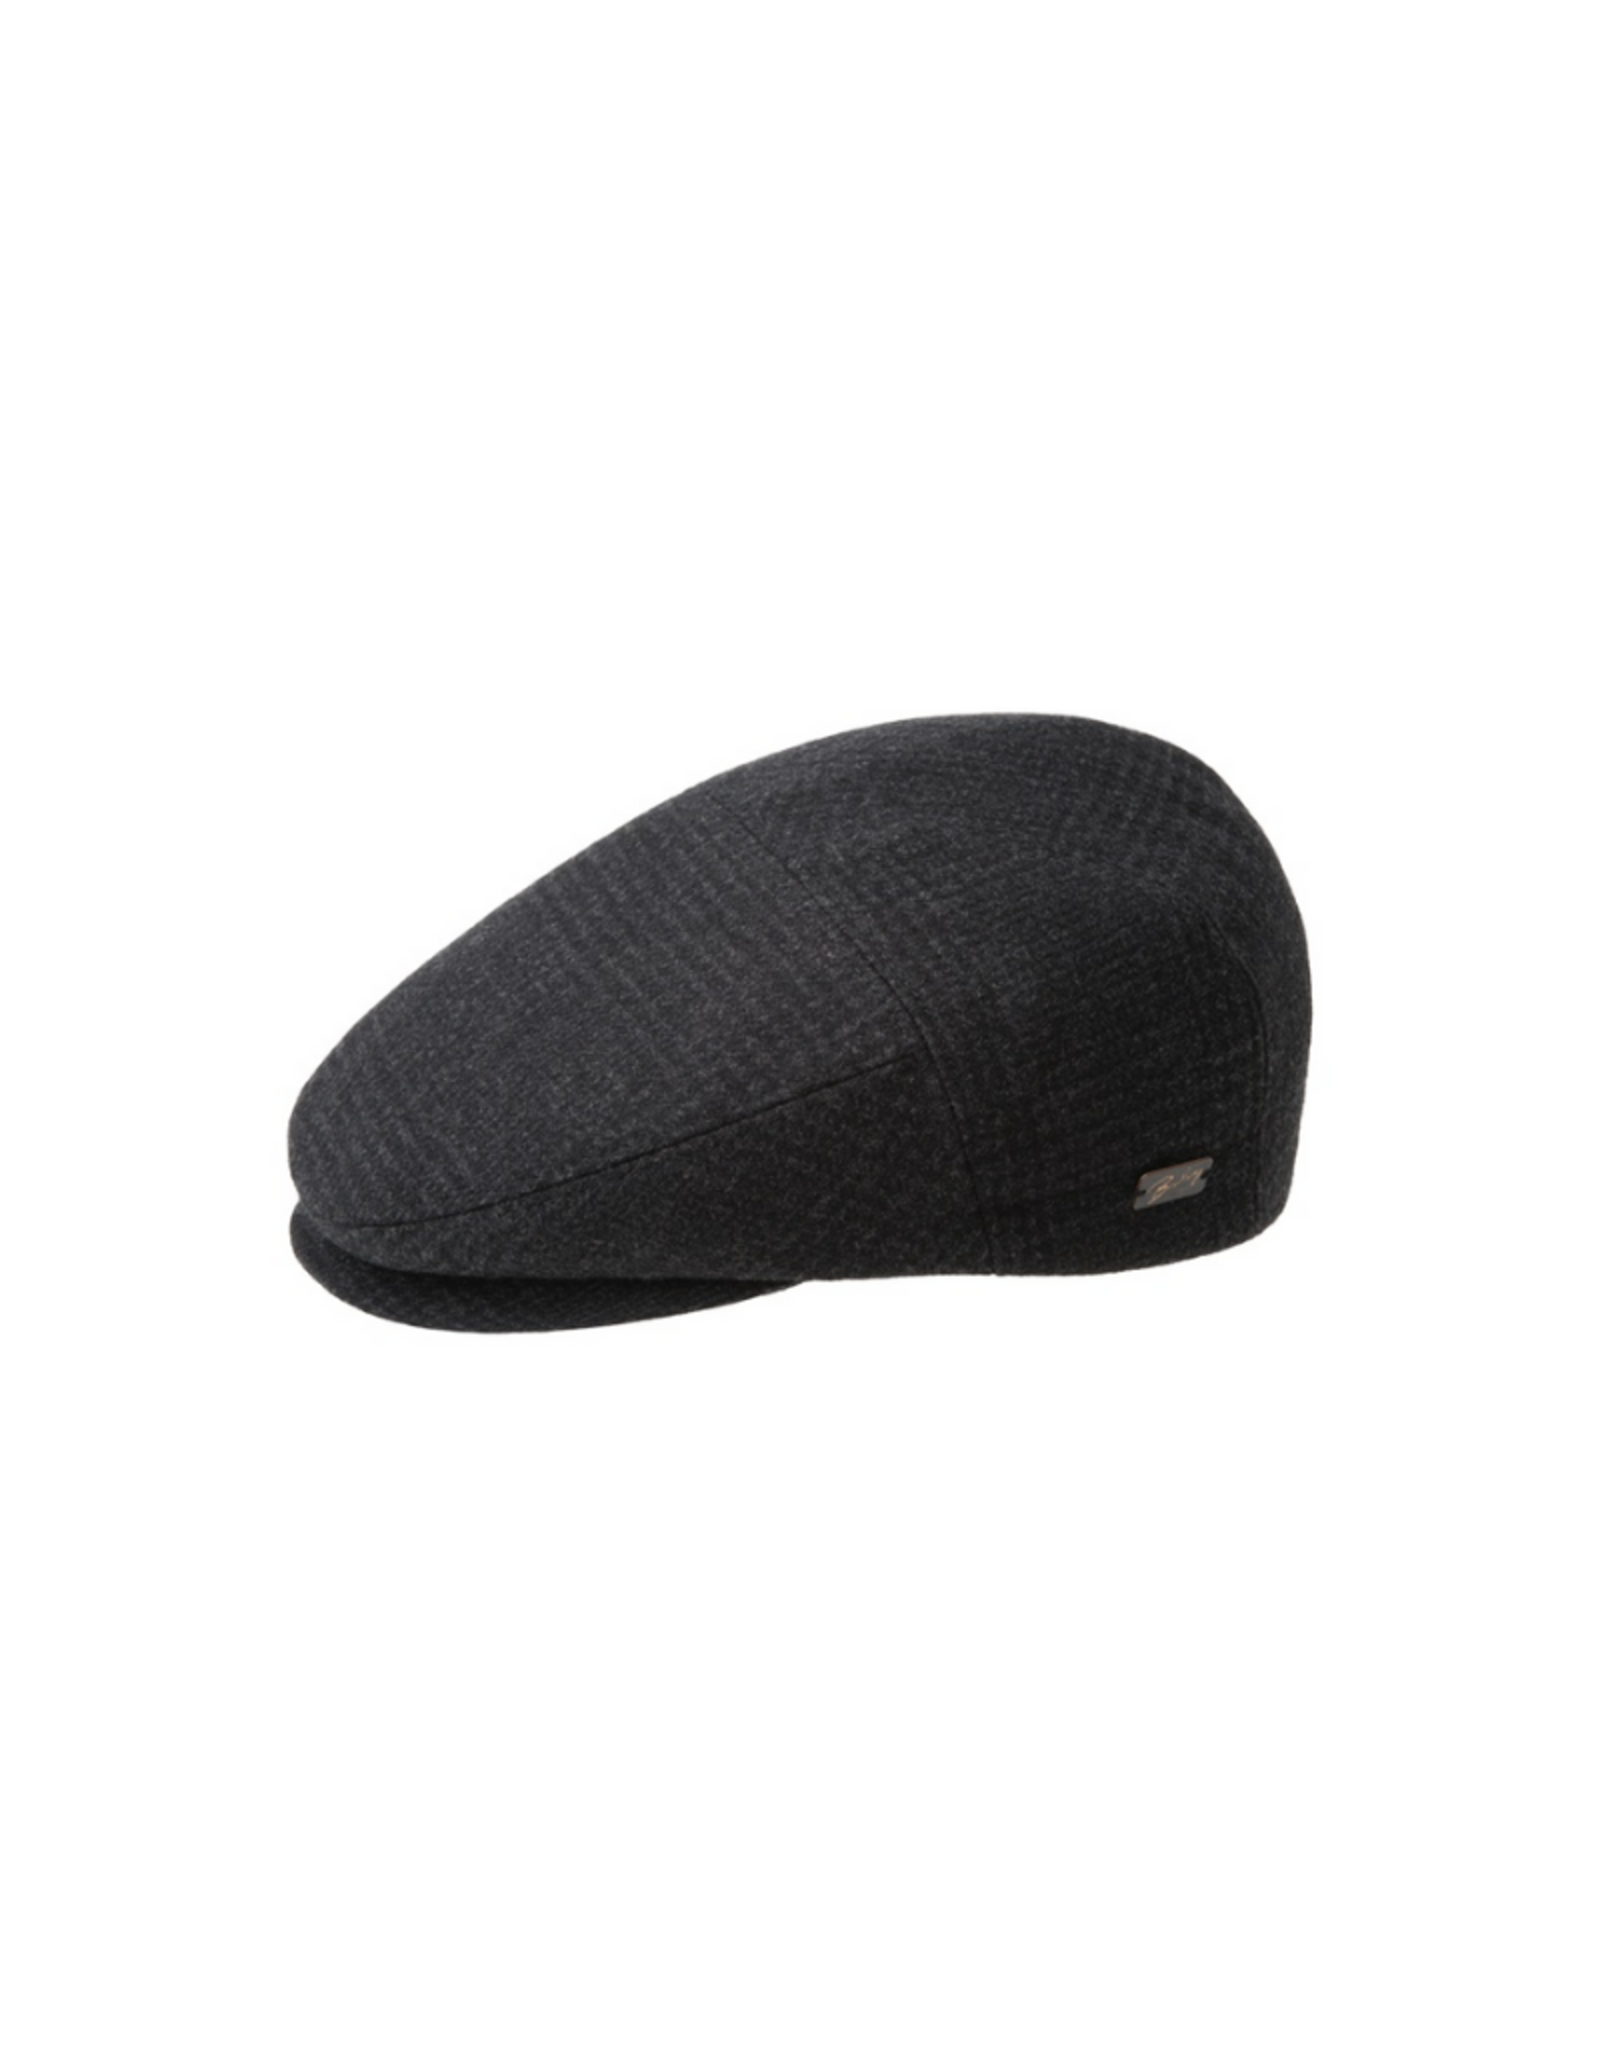 Bailey Hat Co. HAT-FLAT CAP-ORMOND